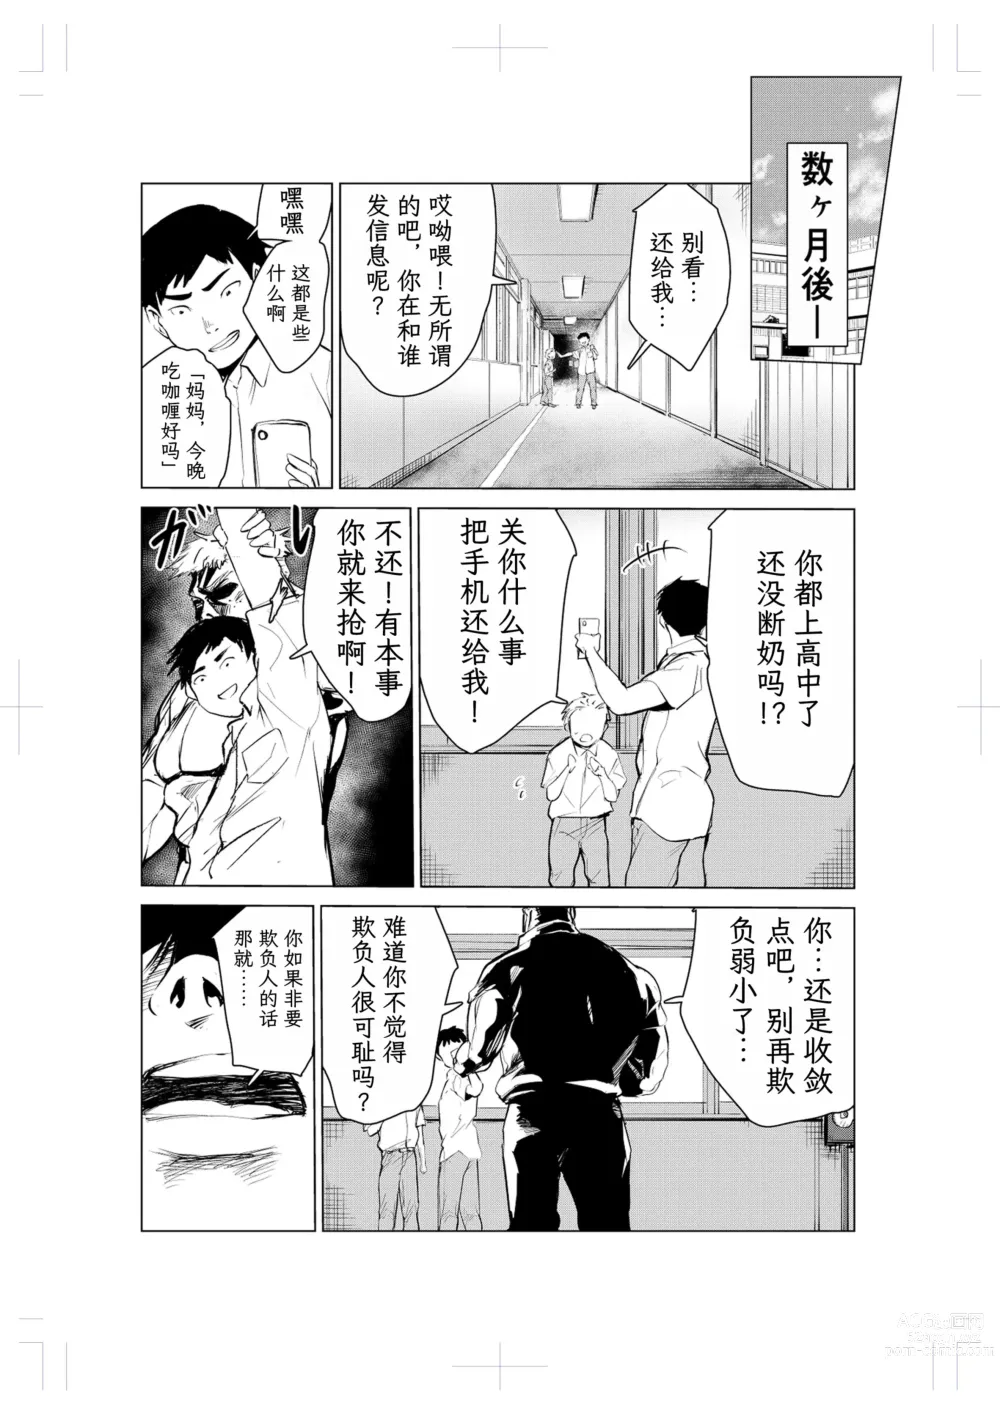 Page 72 of doujinshi 40-sai no Mahoutsukai 2